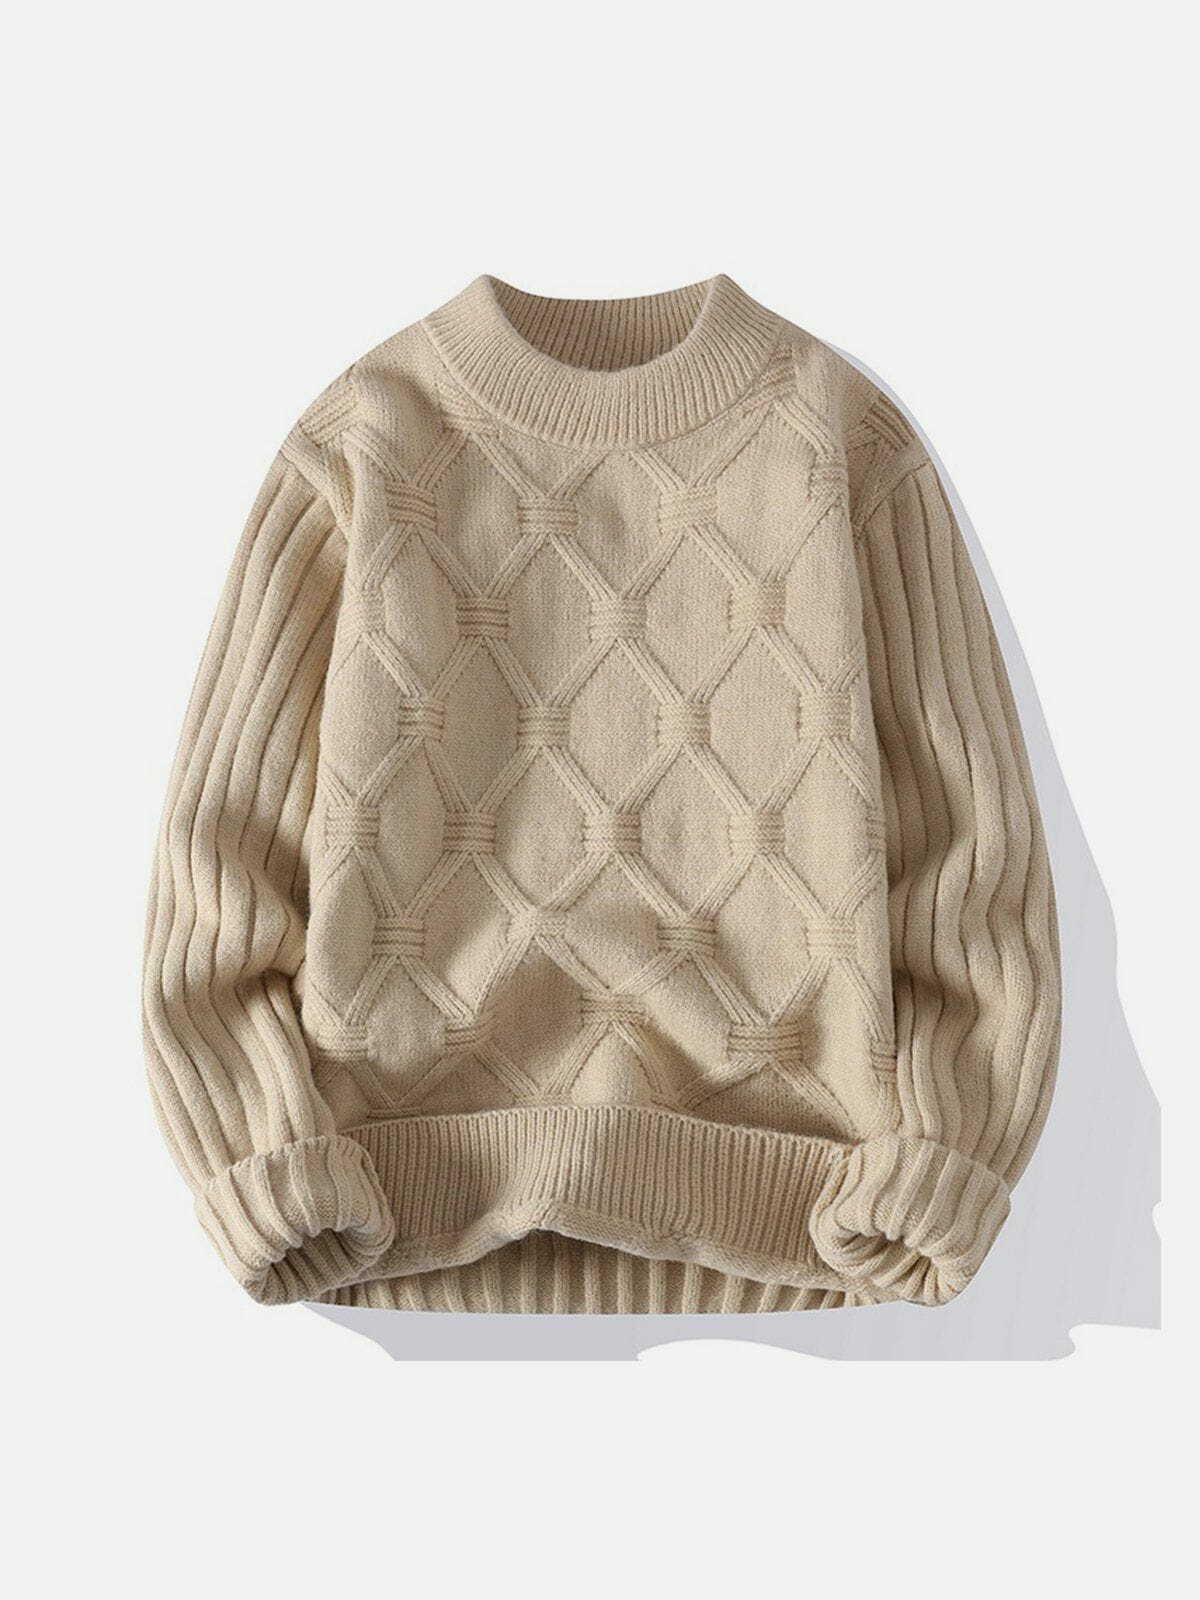 net jacquard sweater sleek & edgy streetwear 7416